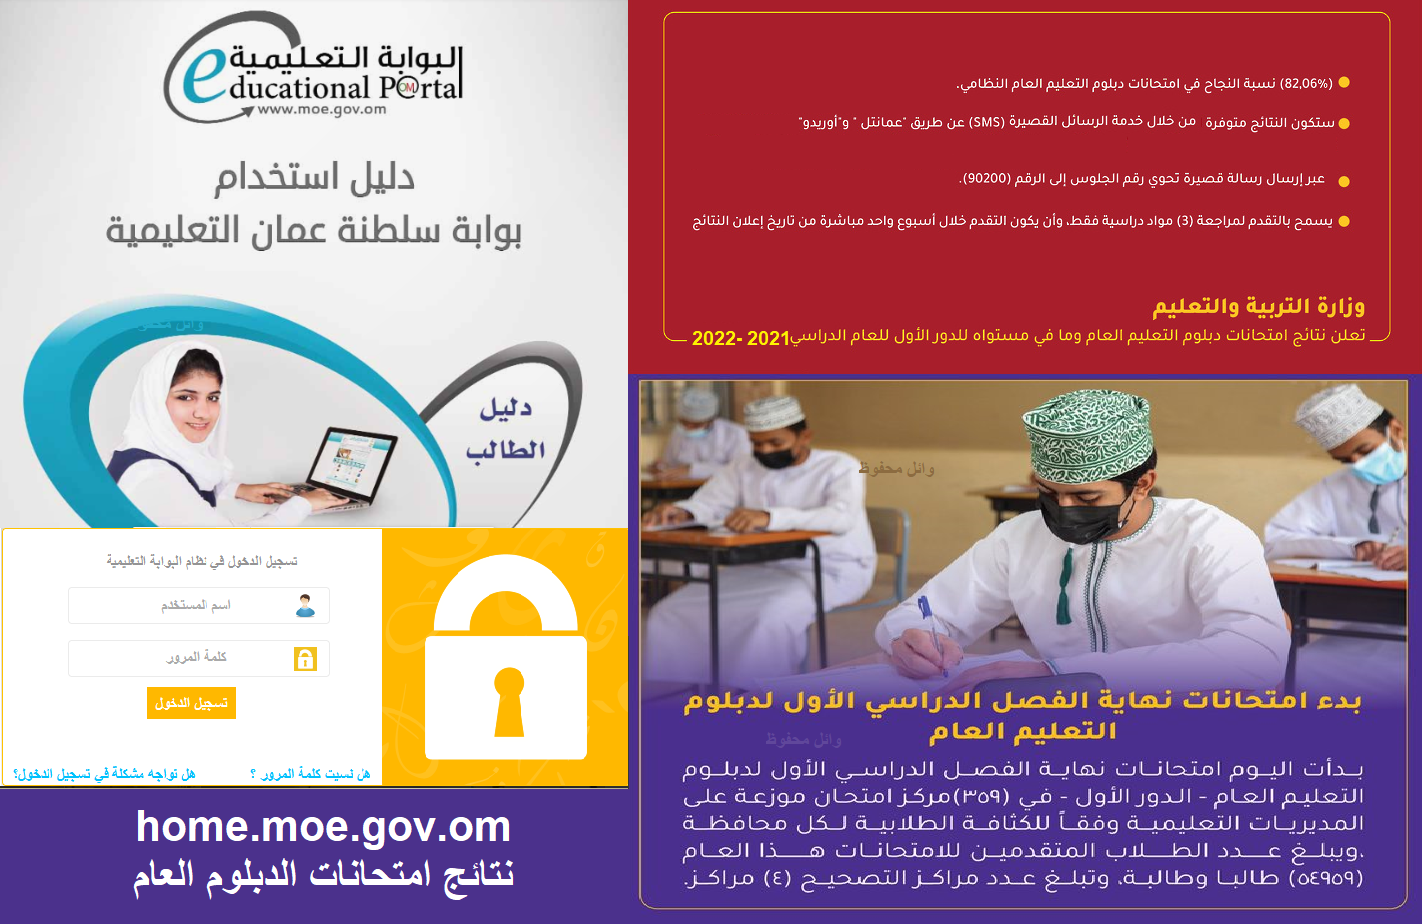 نتائج الدبلوم العام home.moe.gov.om بوابة سلطنة عمان التعليمية والدخول بالساعة مع رقم المكان